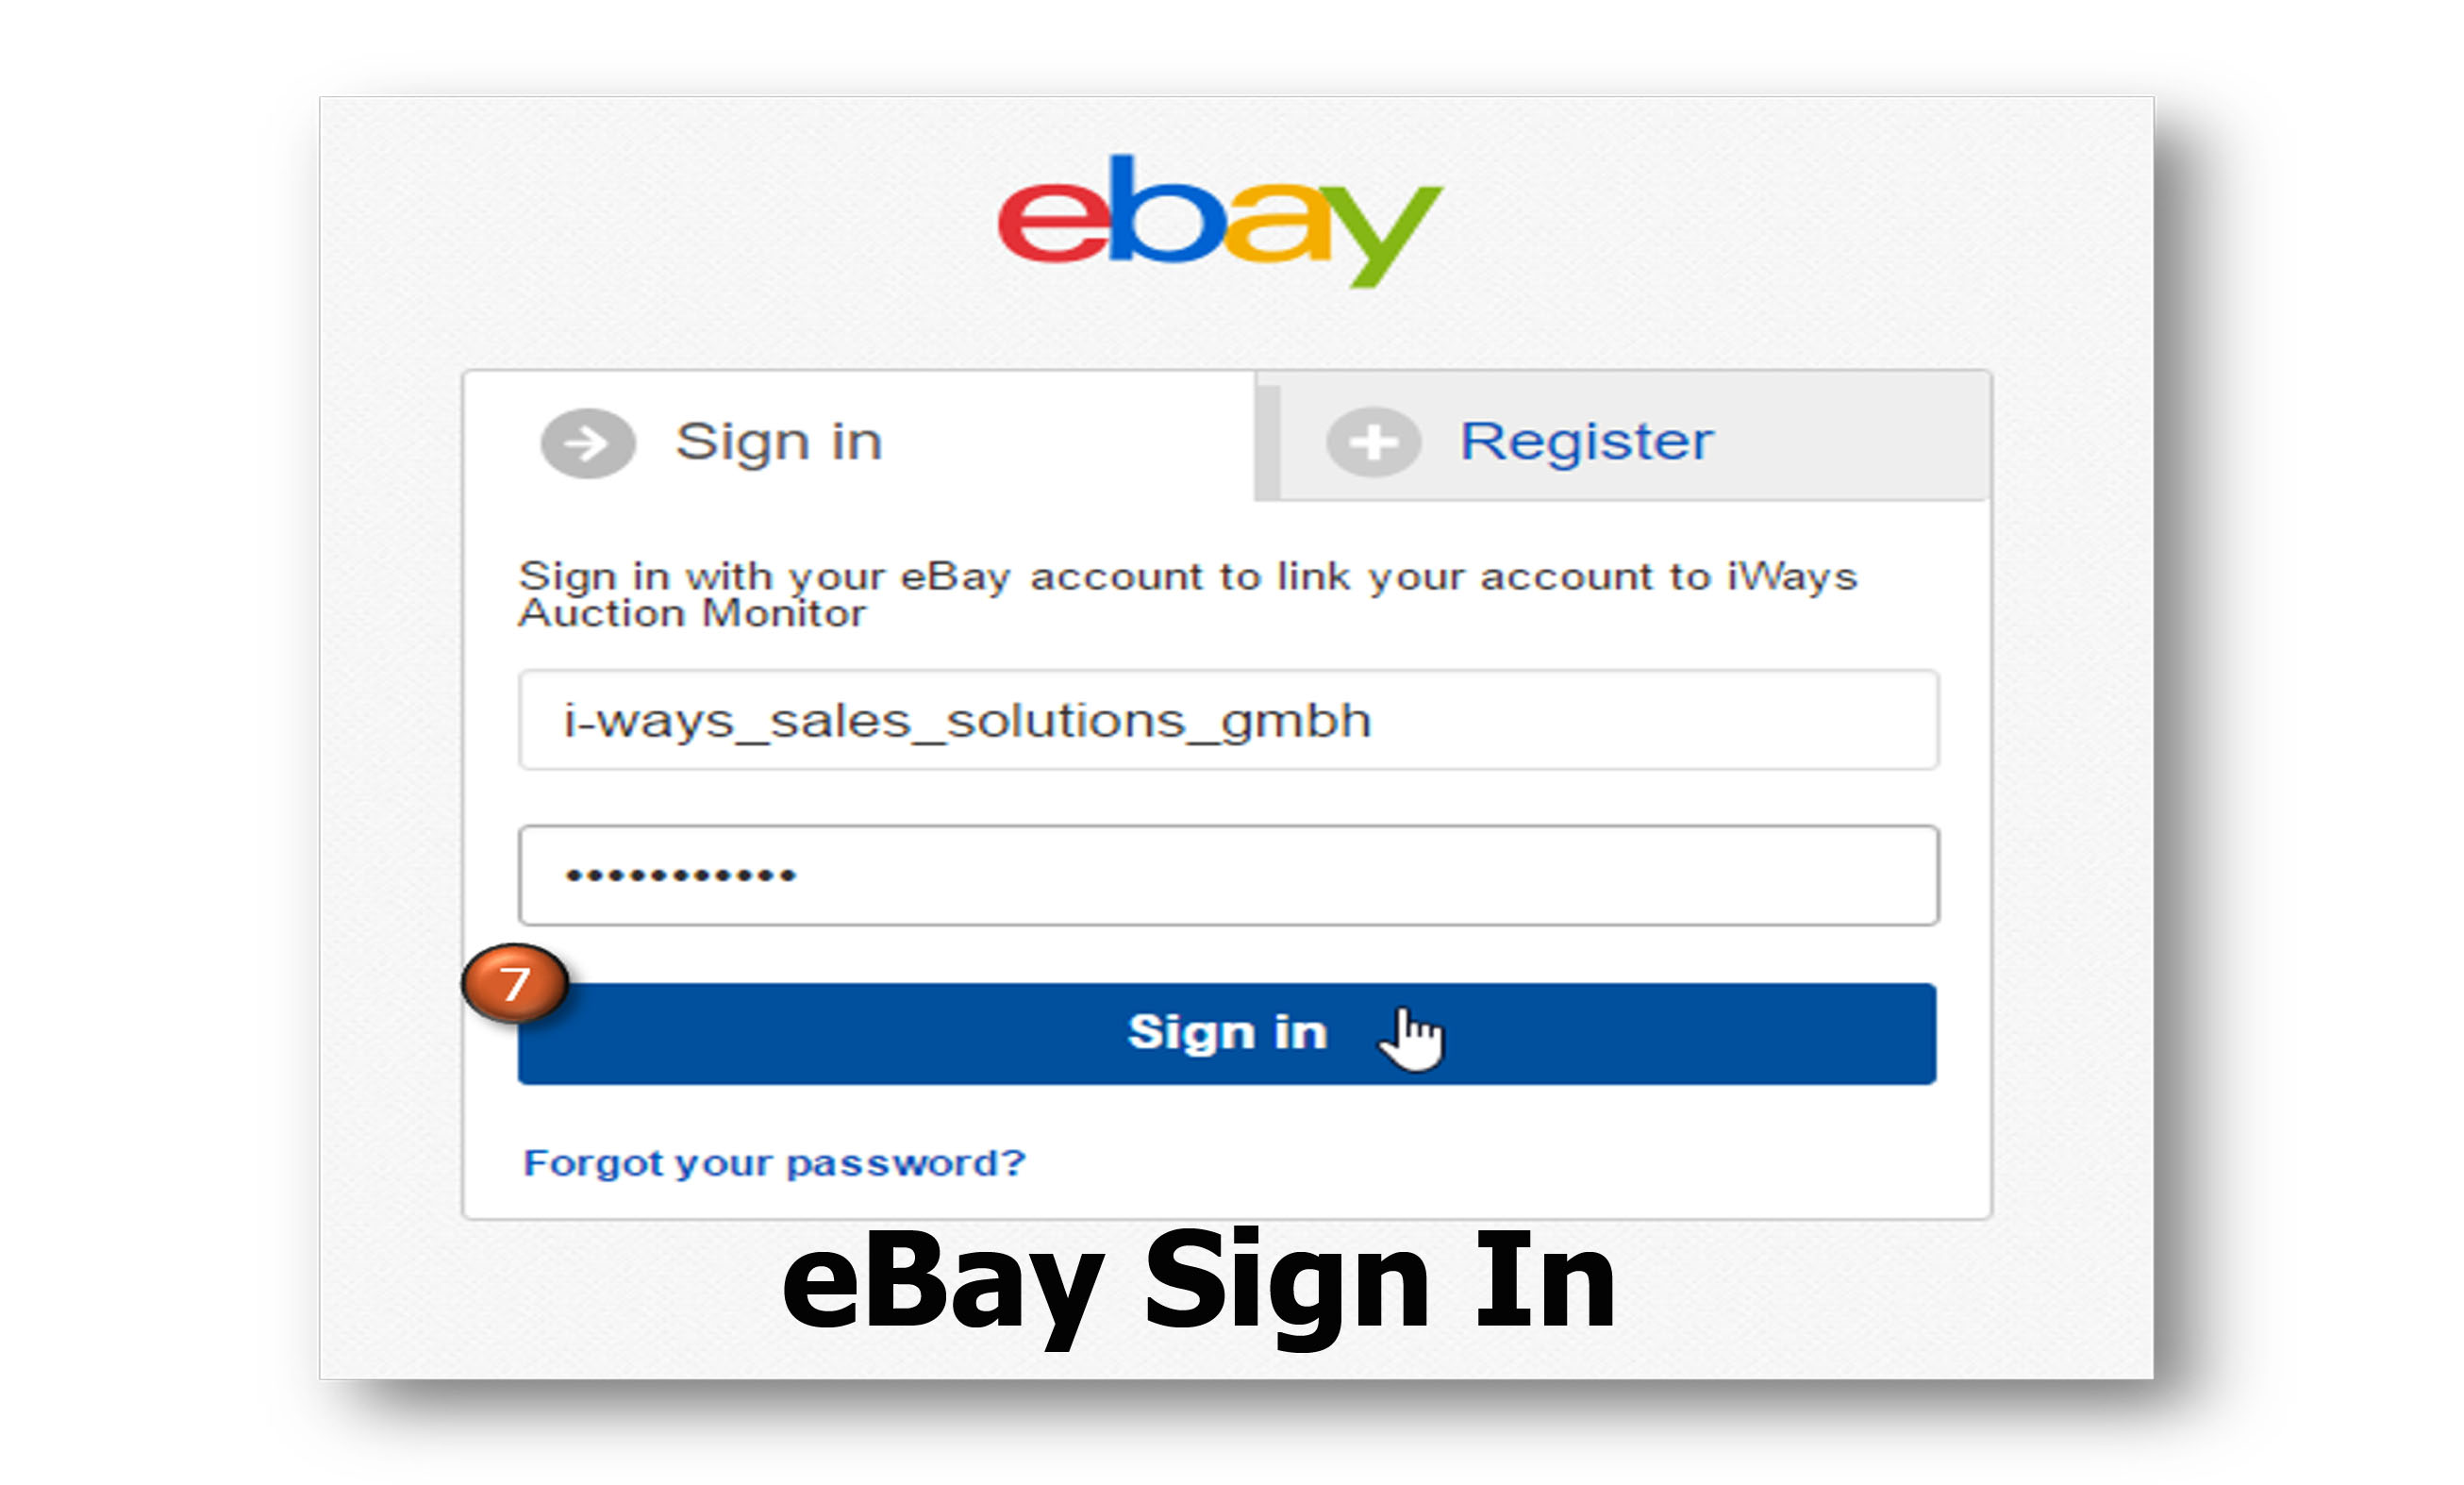 ebay sign in my ebay